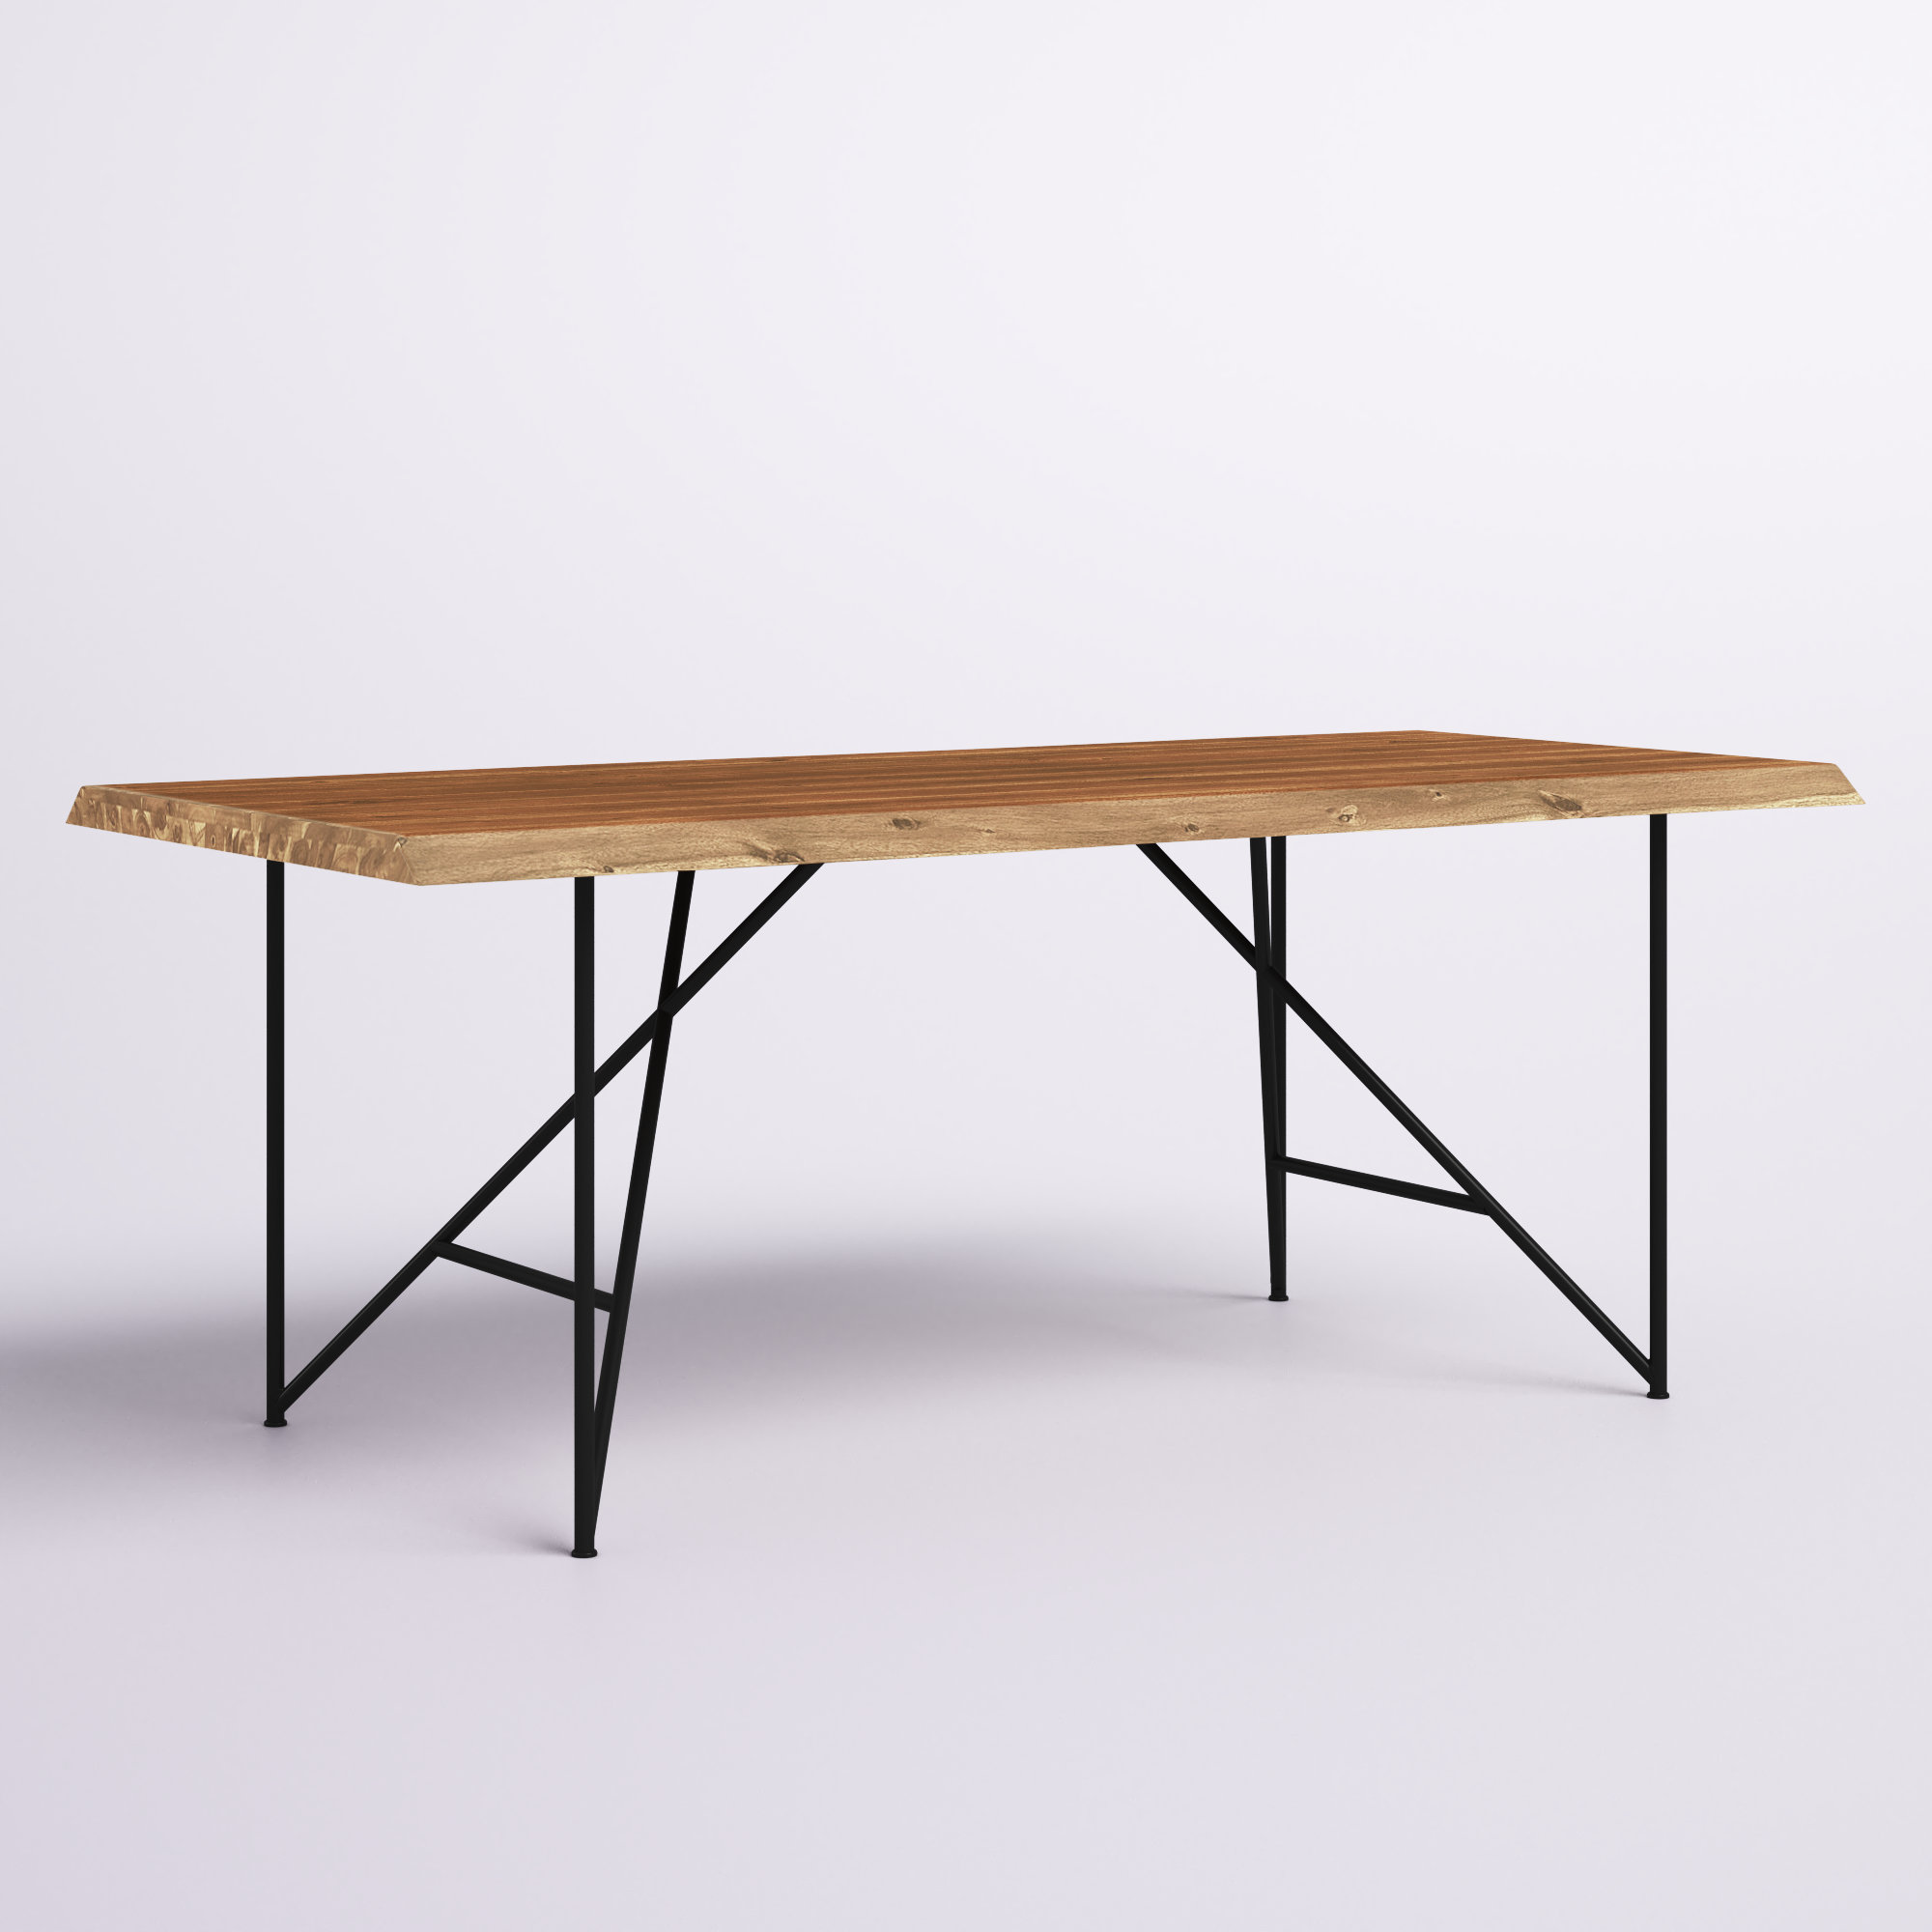 Joason Live Edge Solid Wood Dining Table, Light Walnut